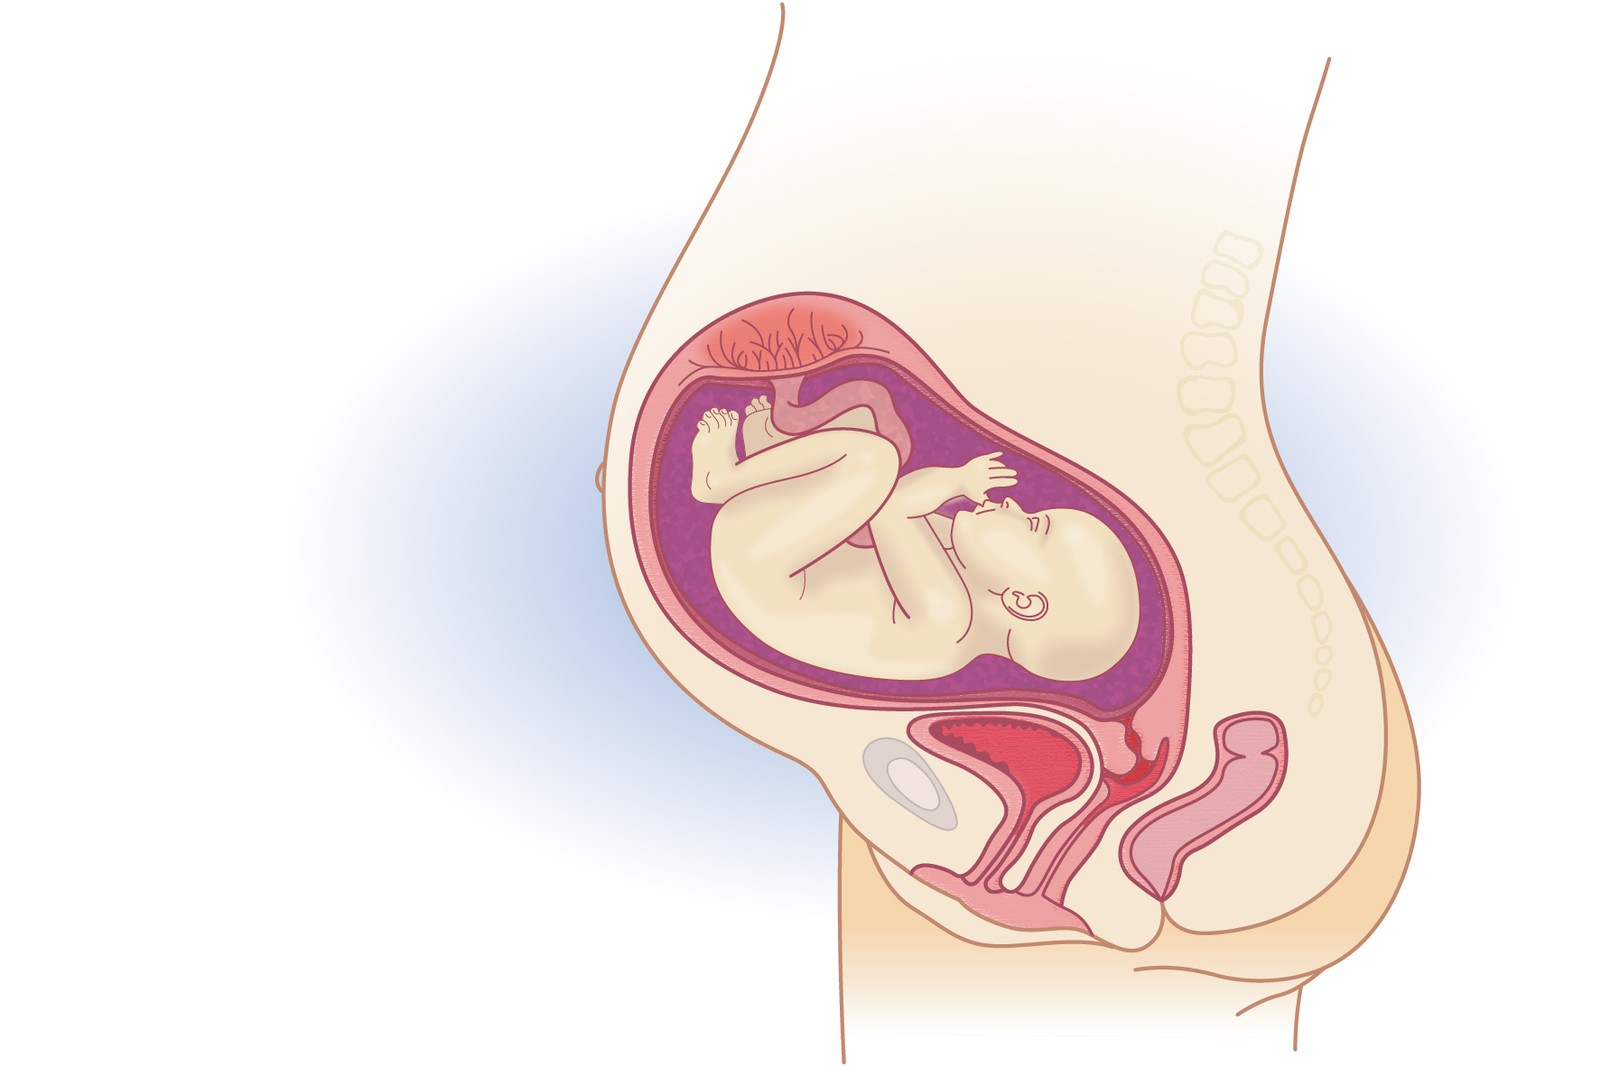 Plod v 31. týdnu těhotenství